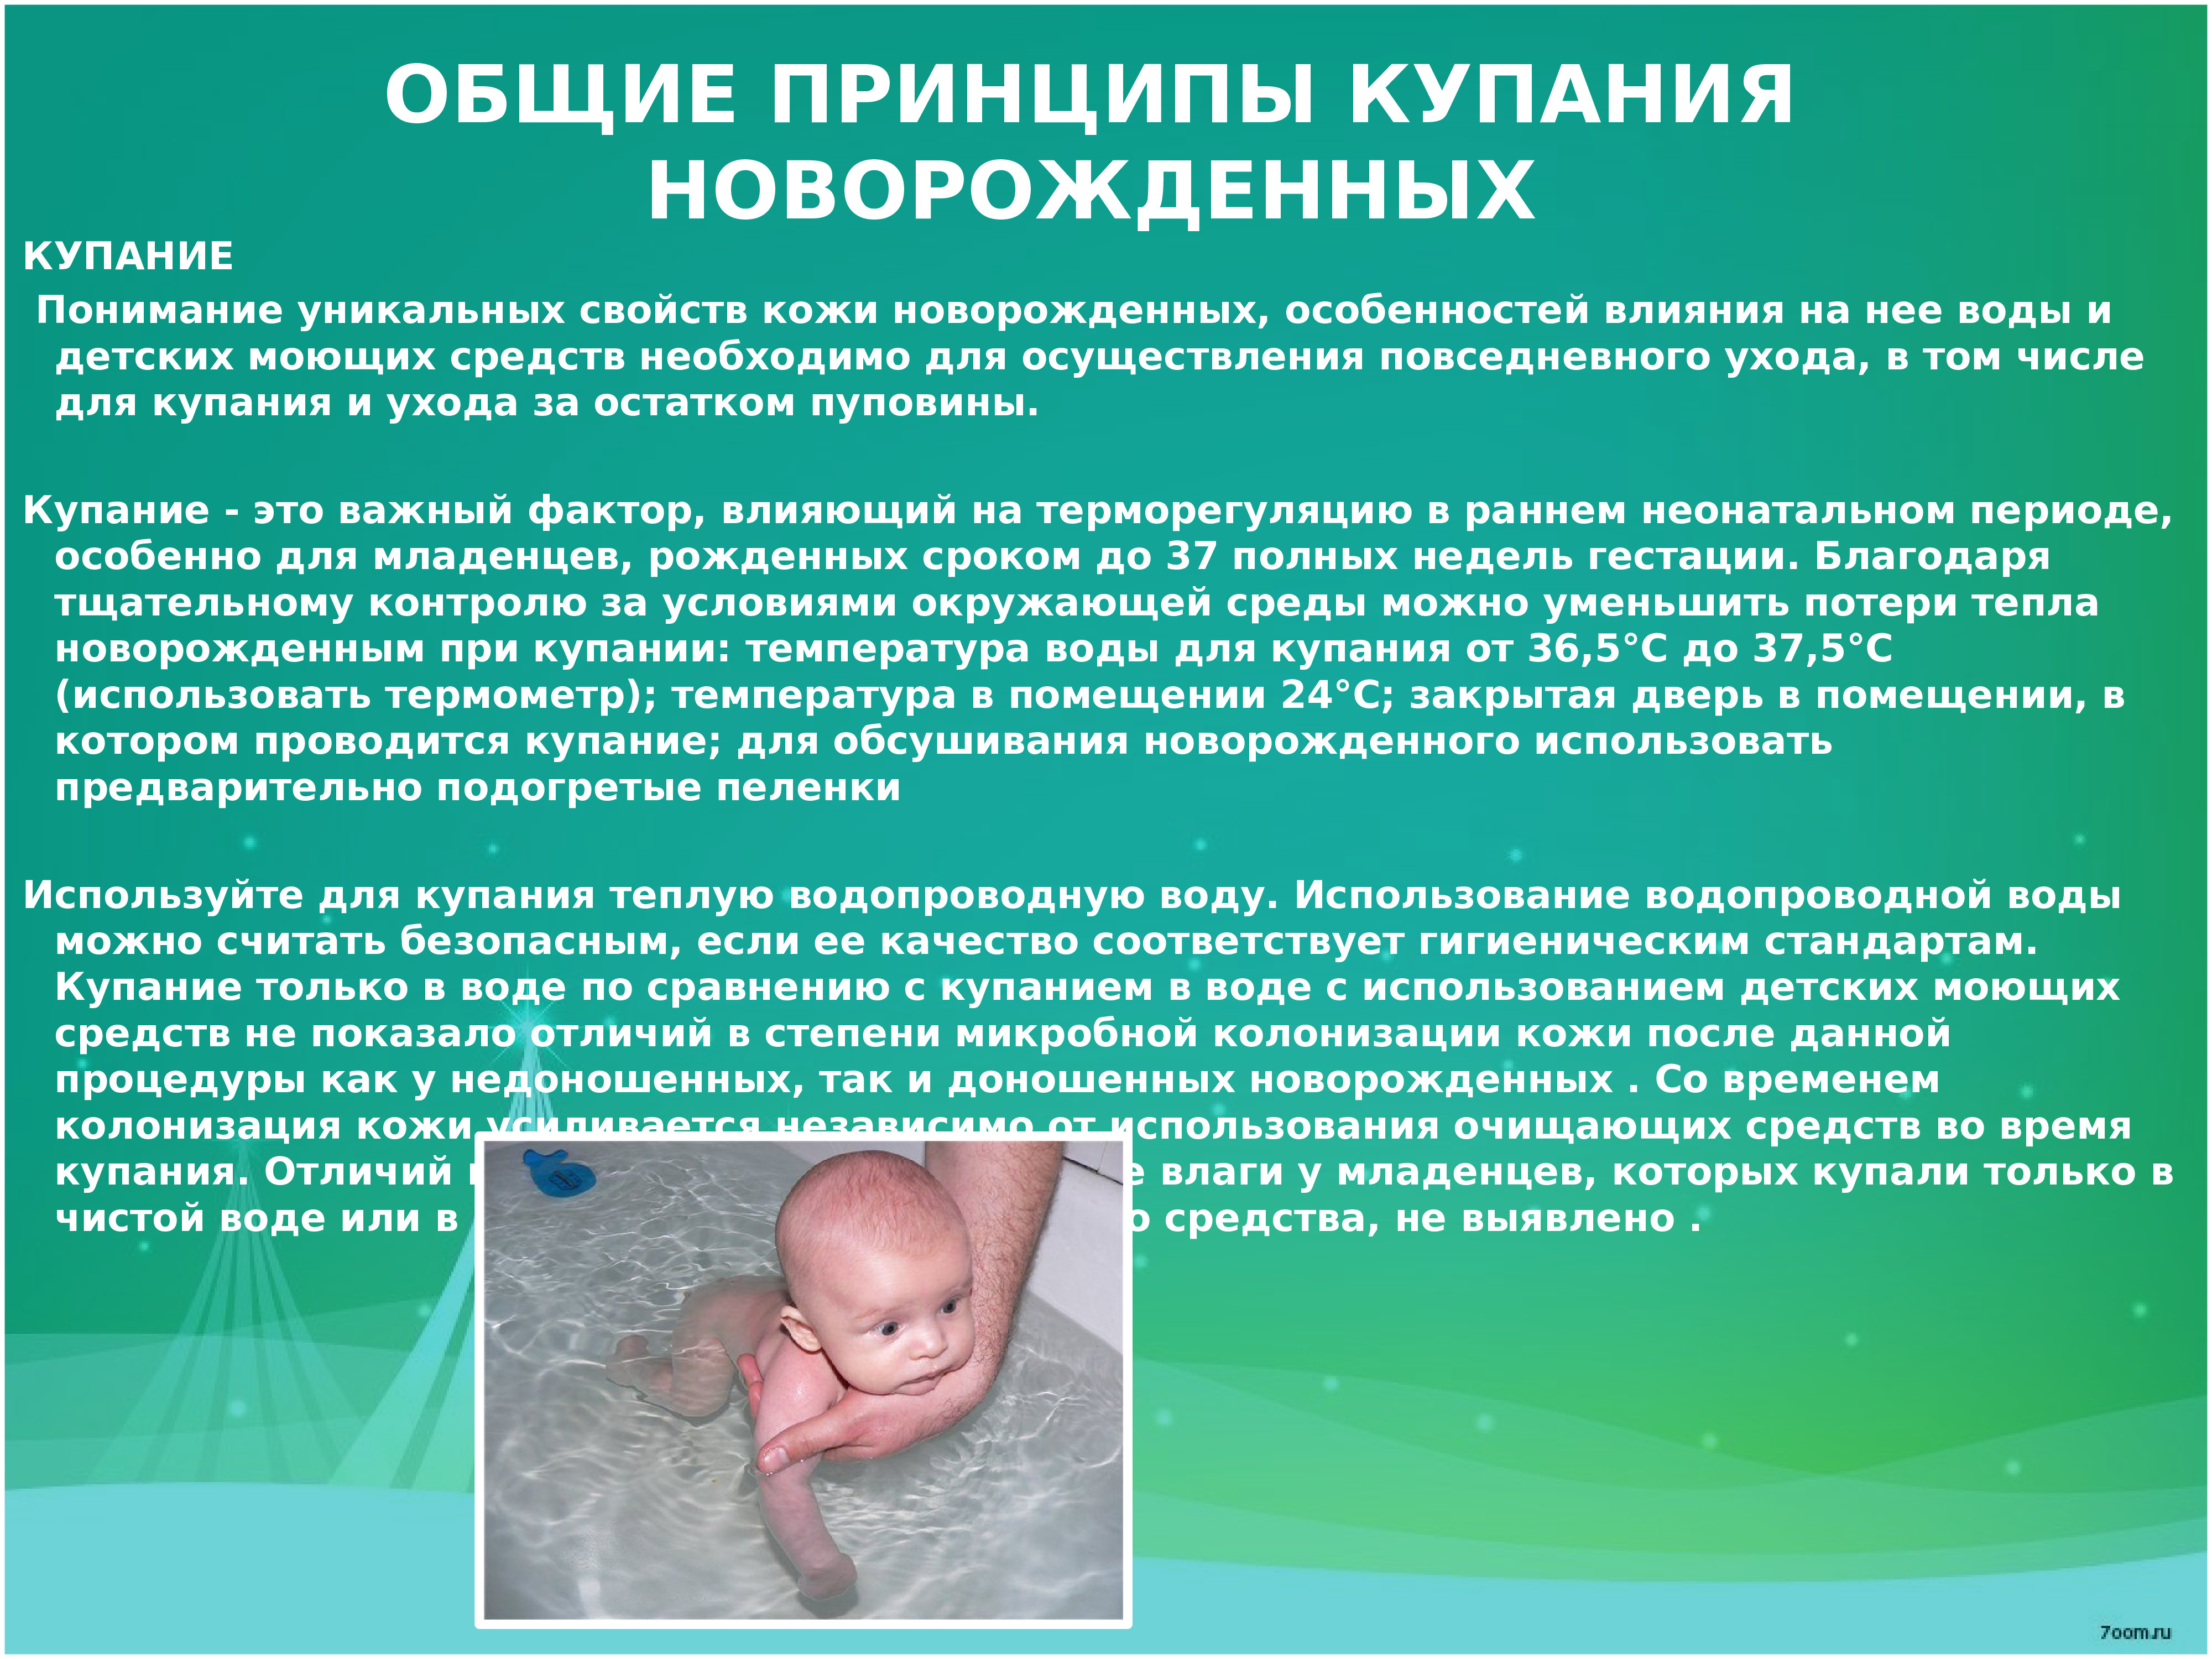 Первое купание новорожденного температура. Температура для купания новорожденного ребенка. Температура воды для купания новорожденного. Температура воды для купания новорожденных детей. Купание новорожденного рекомендации.